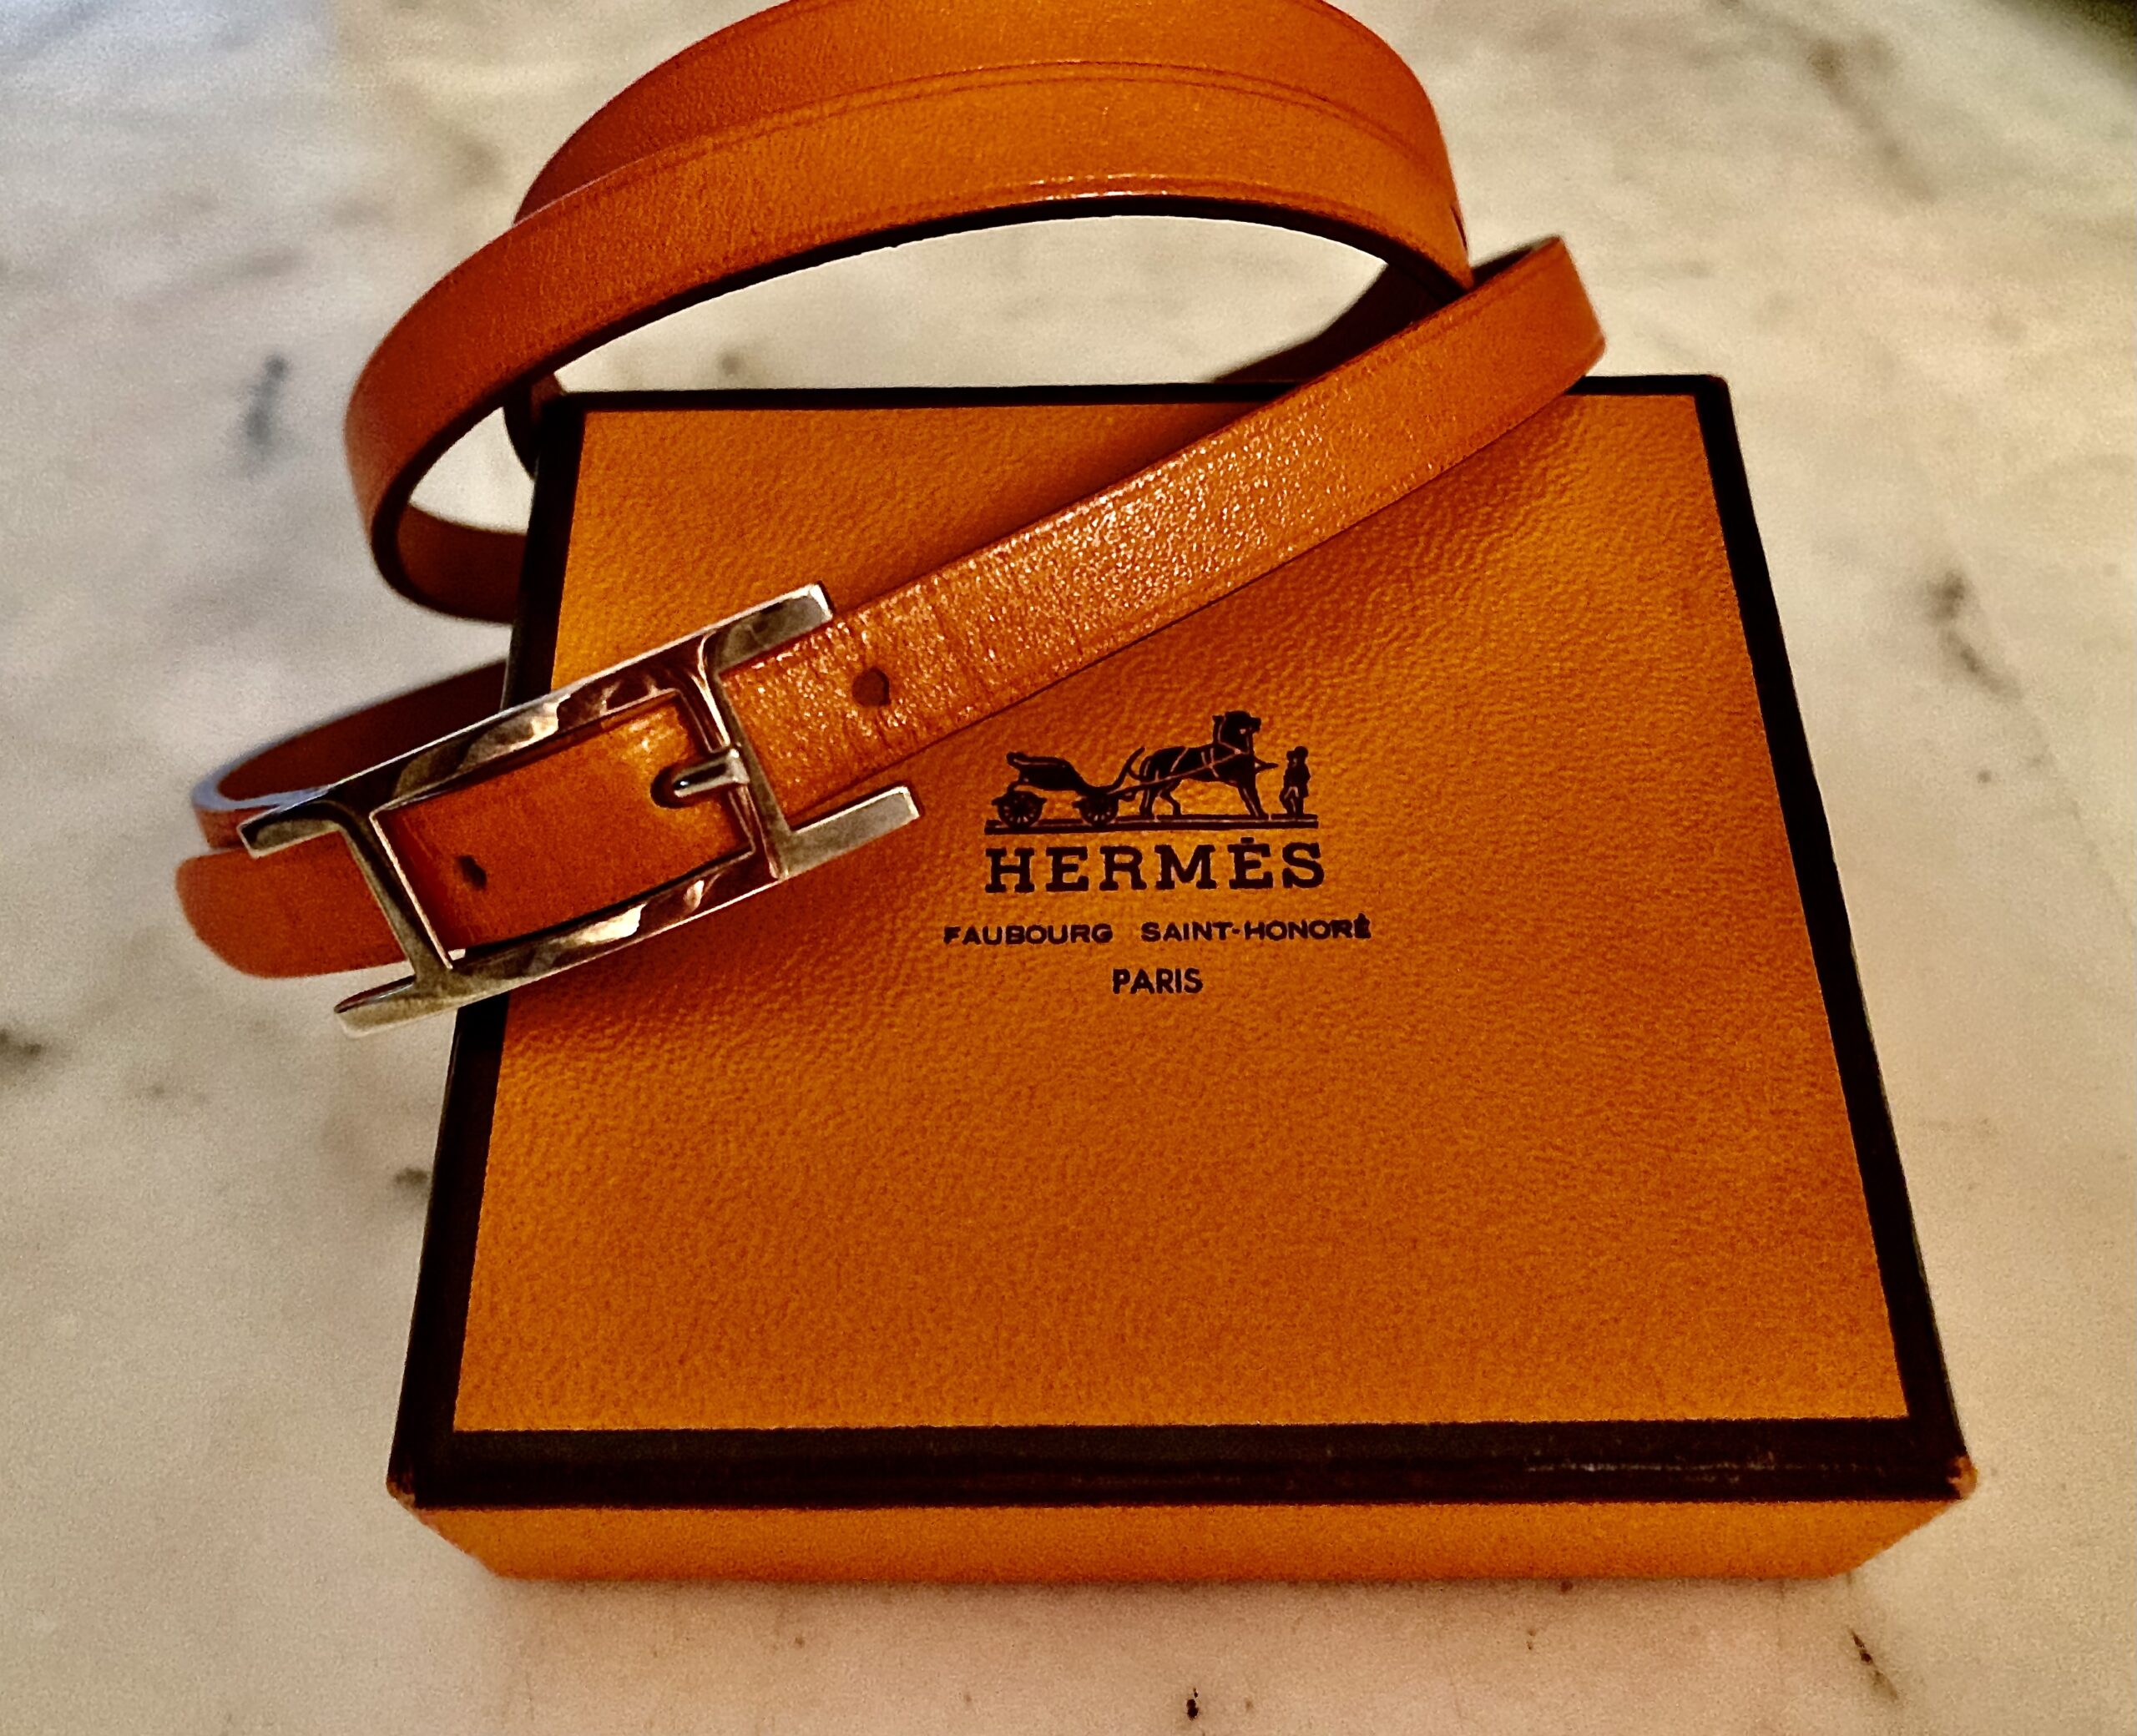 Hermès' New Le Mains Hermès Collection Celebrates Hands, The Heart